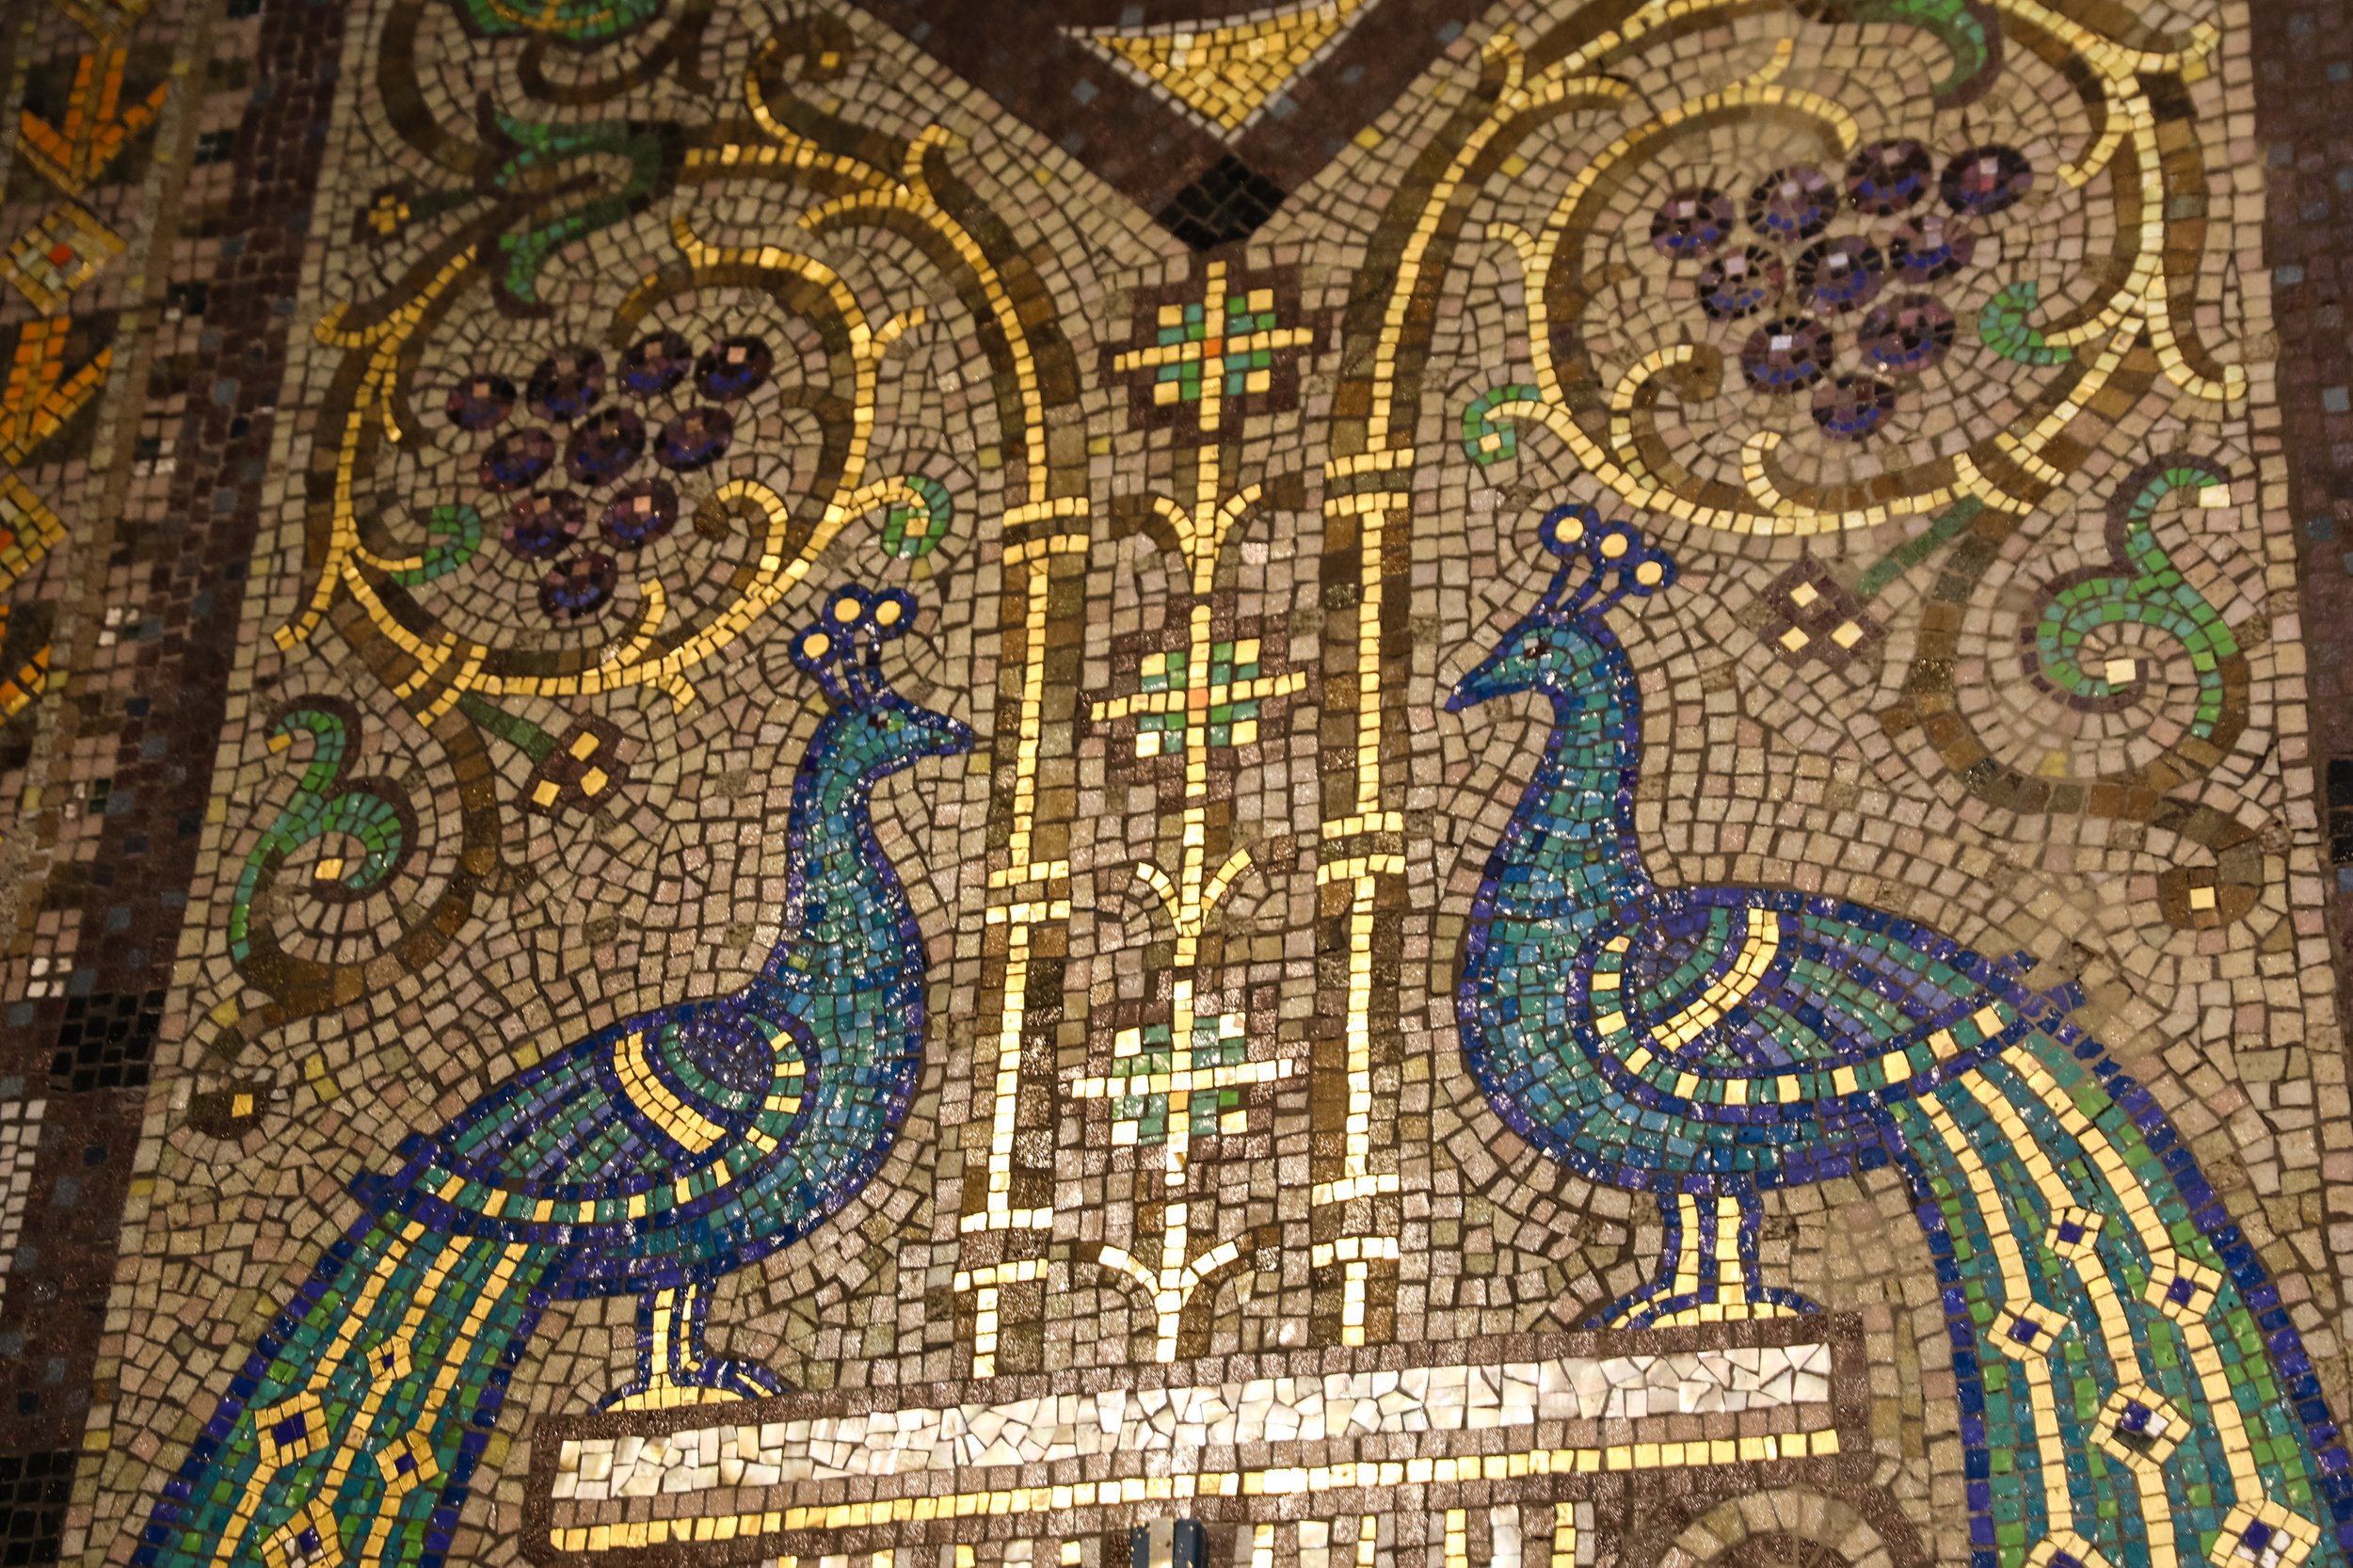 Detail of mosaic